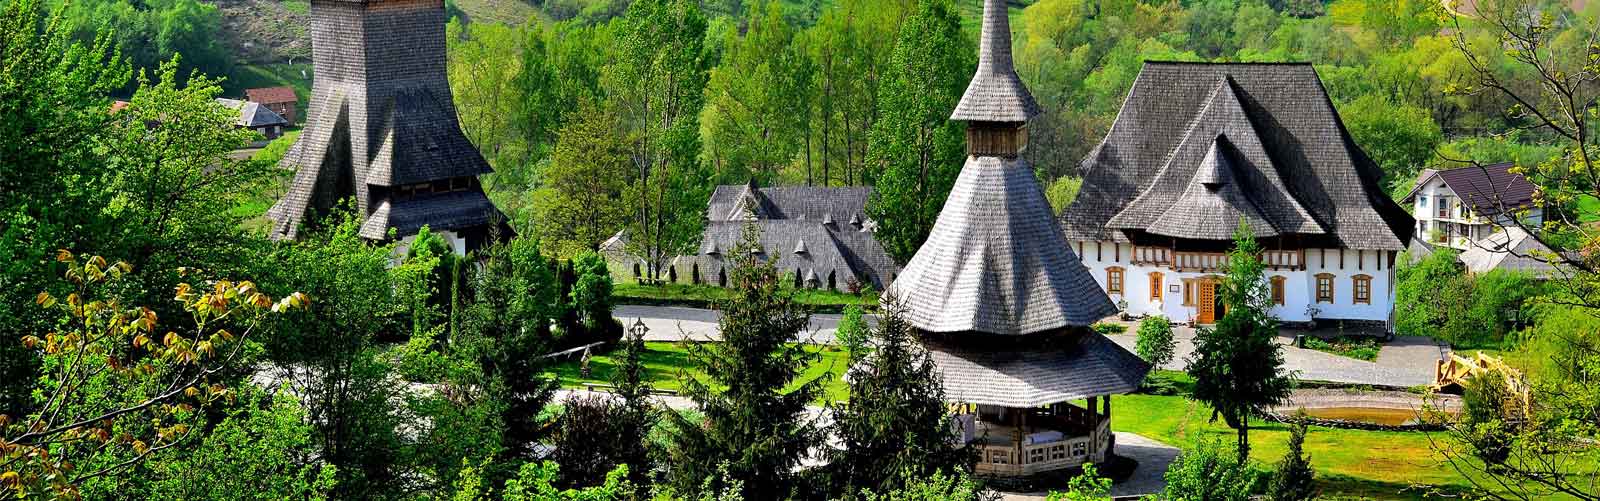 At 11km away from Popasul Ioana Oncesti pension is the Barsana Monastery complex